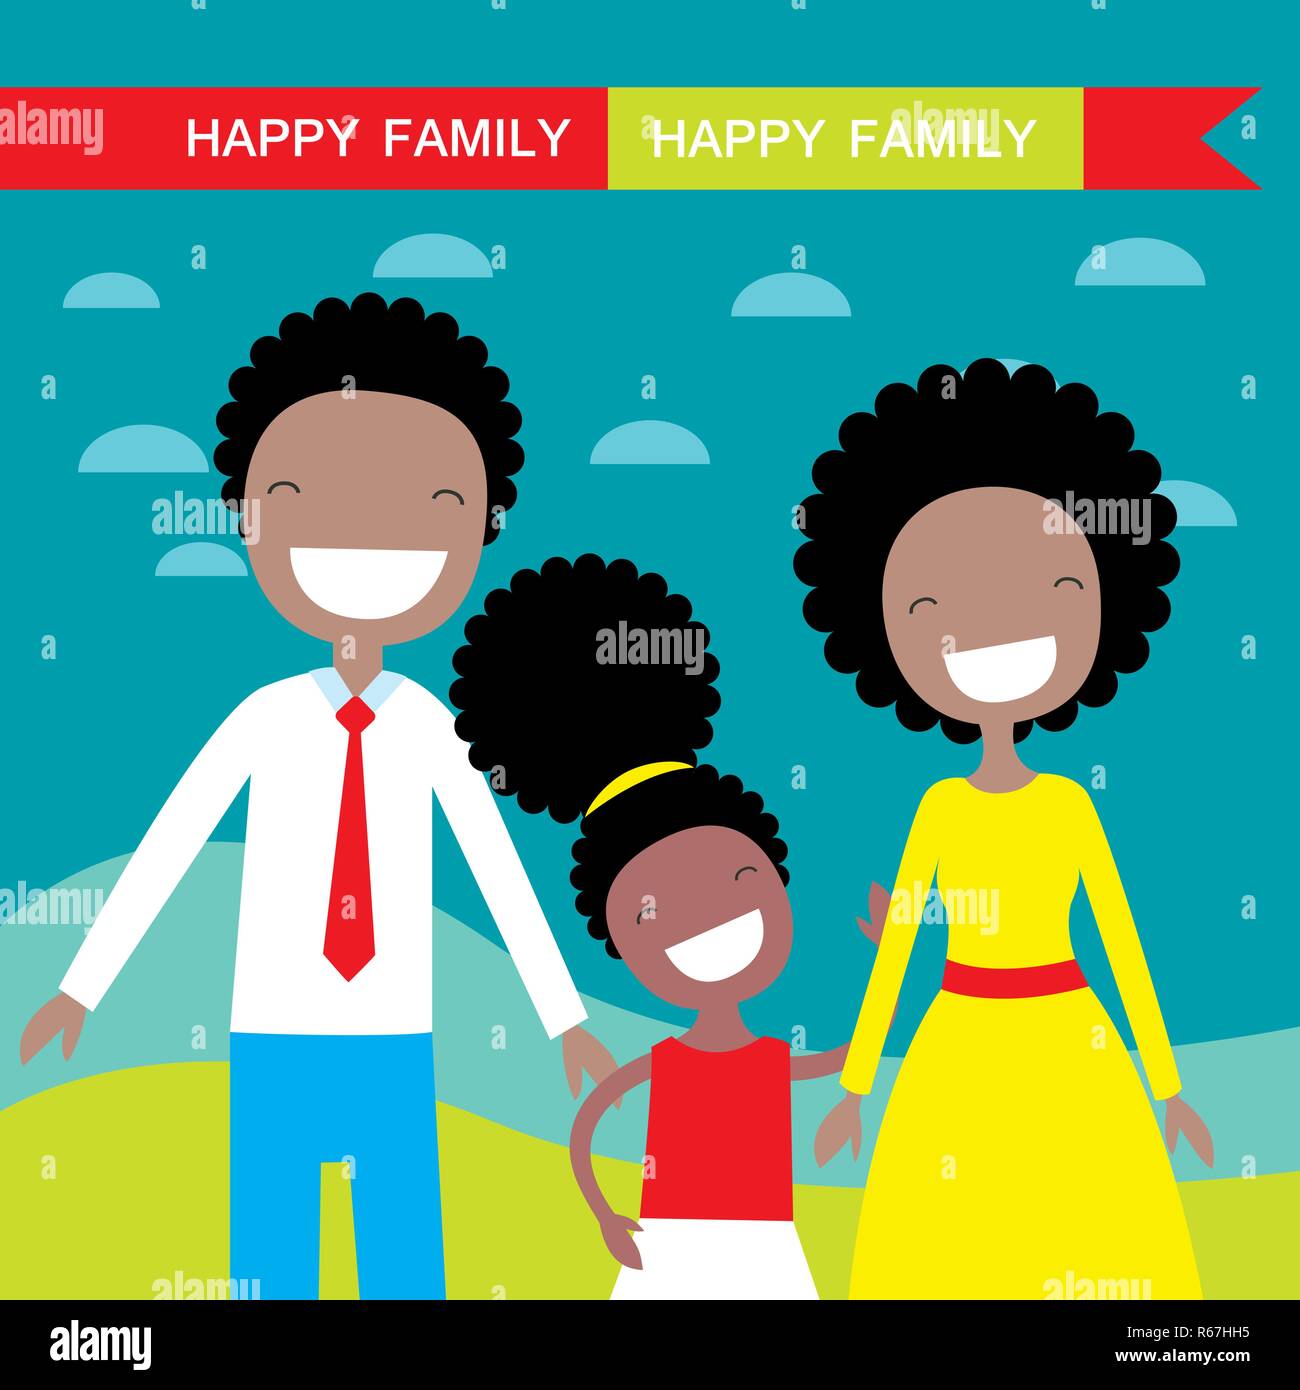 happy family cartoon characters